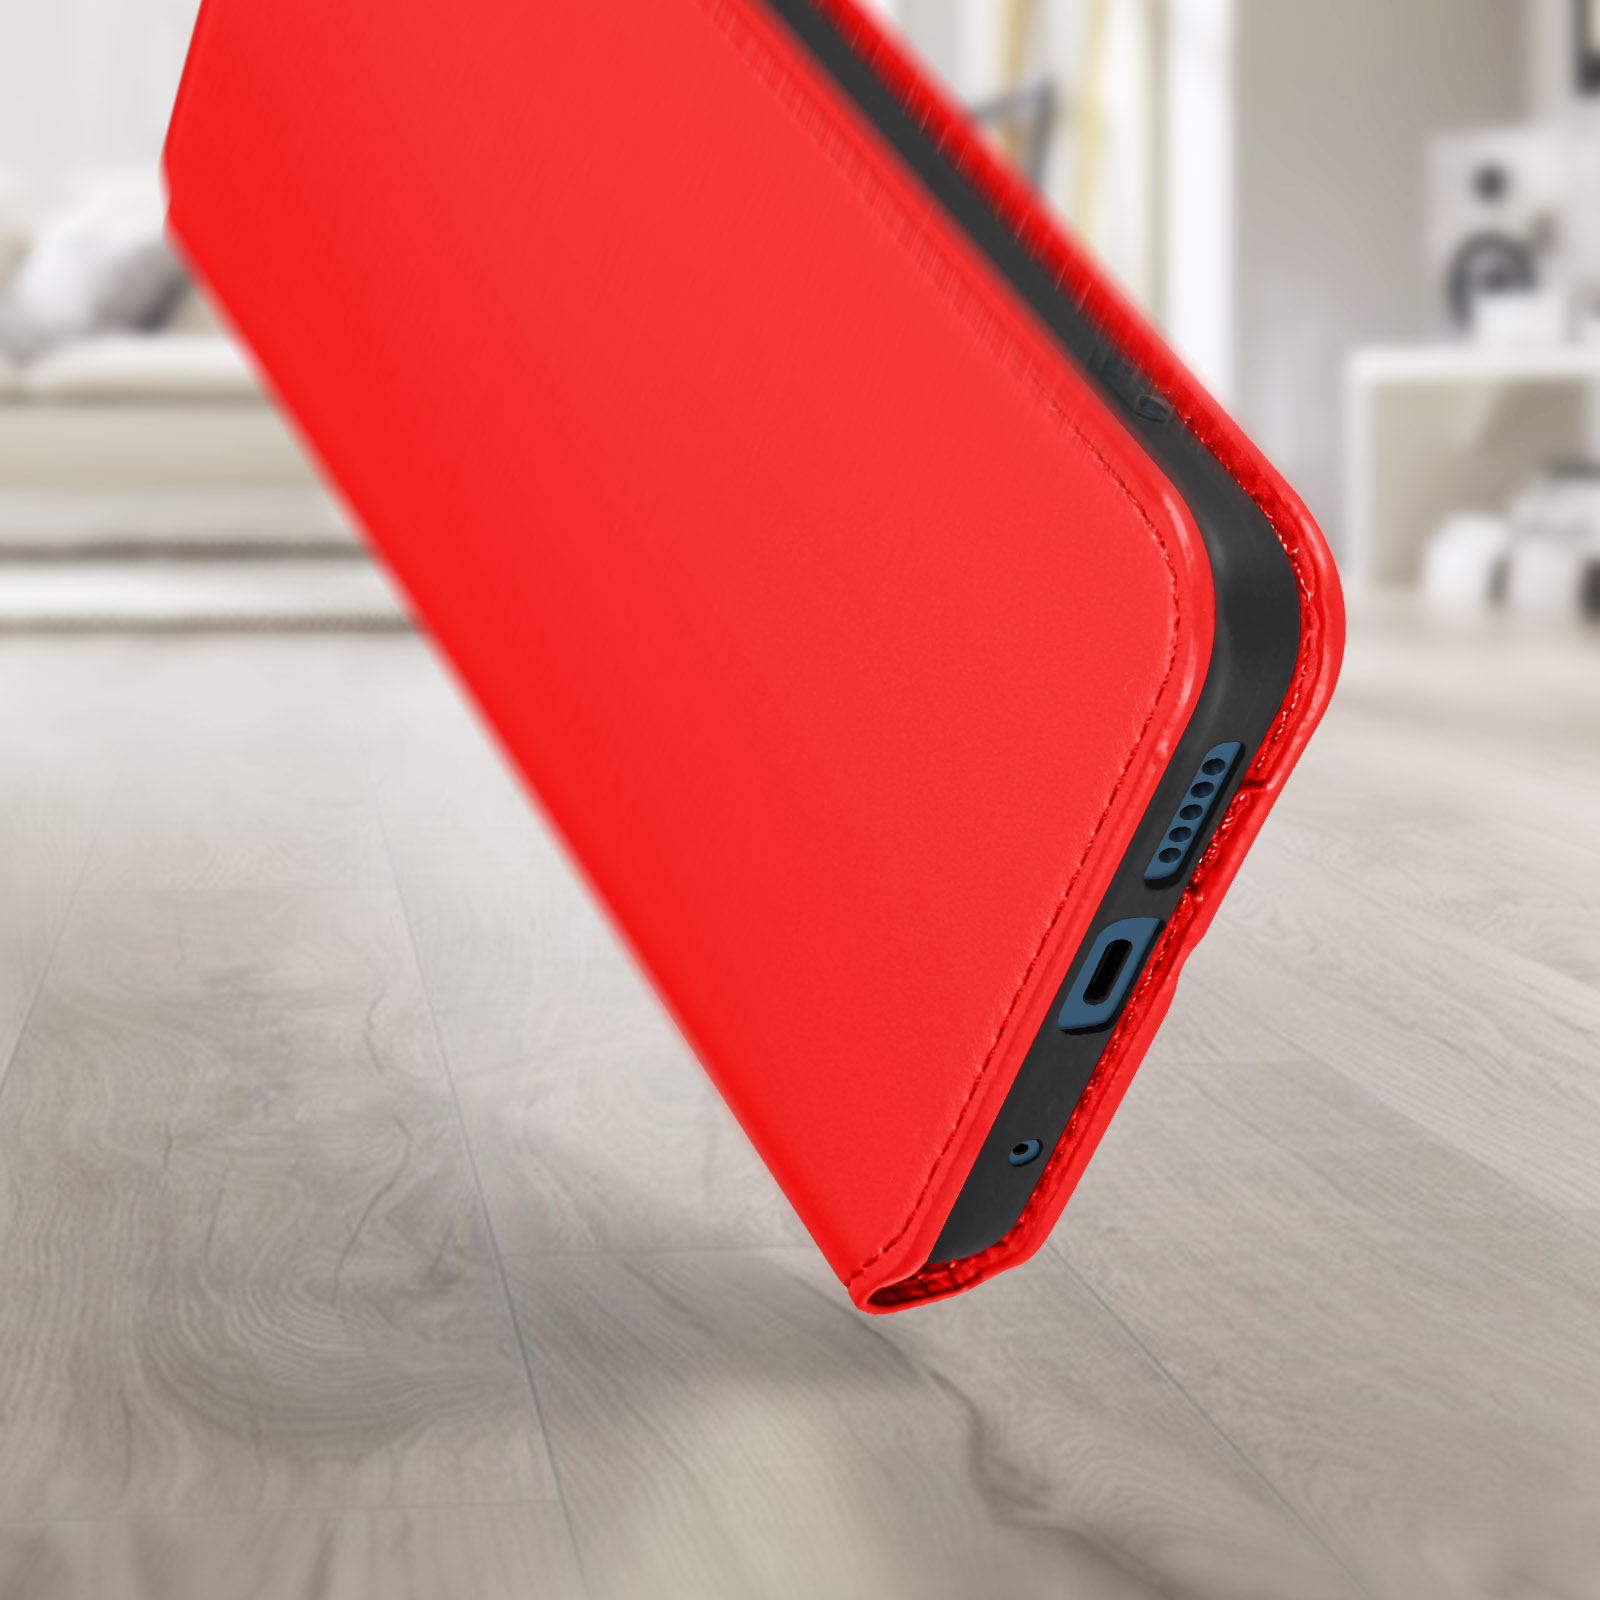 Rot AVIZAR Elec Series, Bookcover, Pro 5G, Xiaomi, Note 11 Redmi